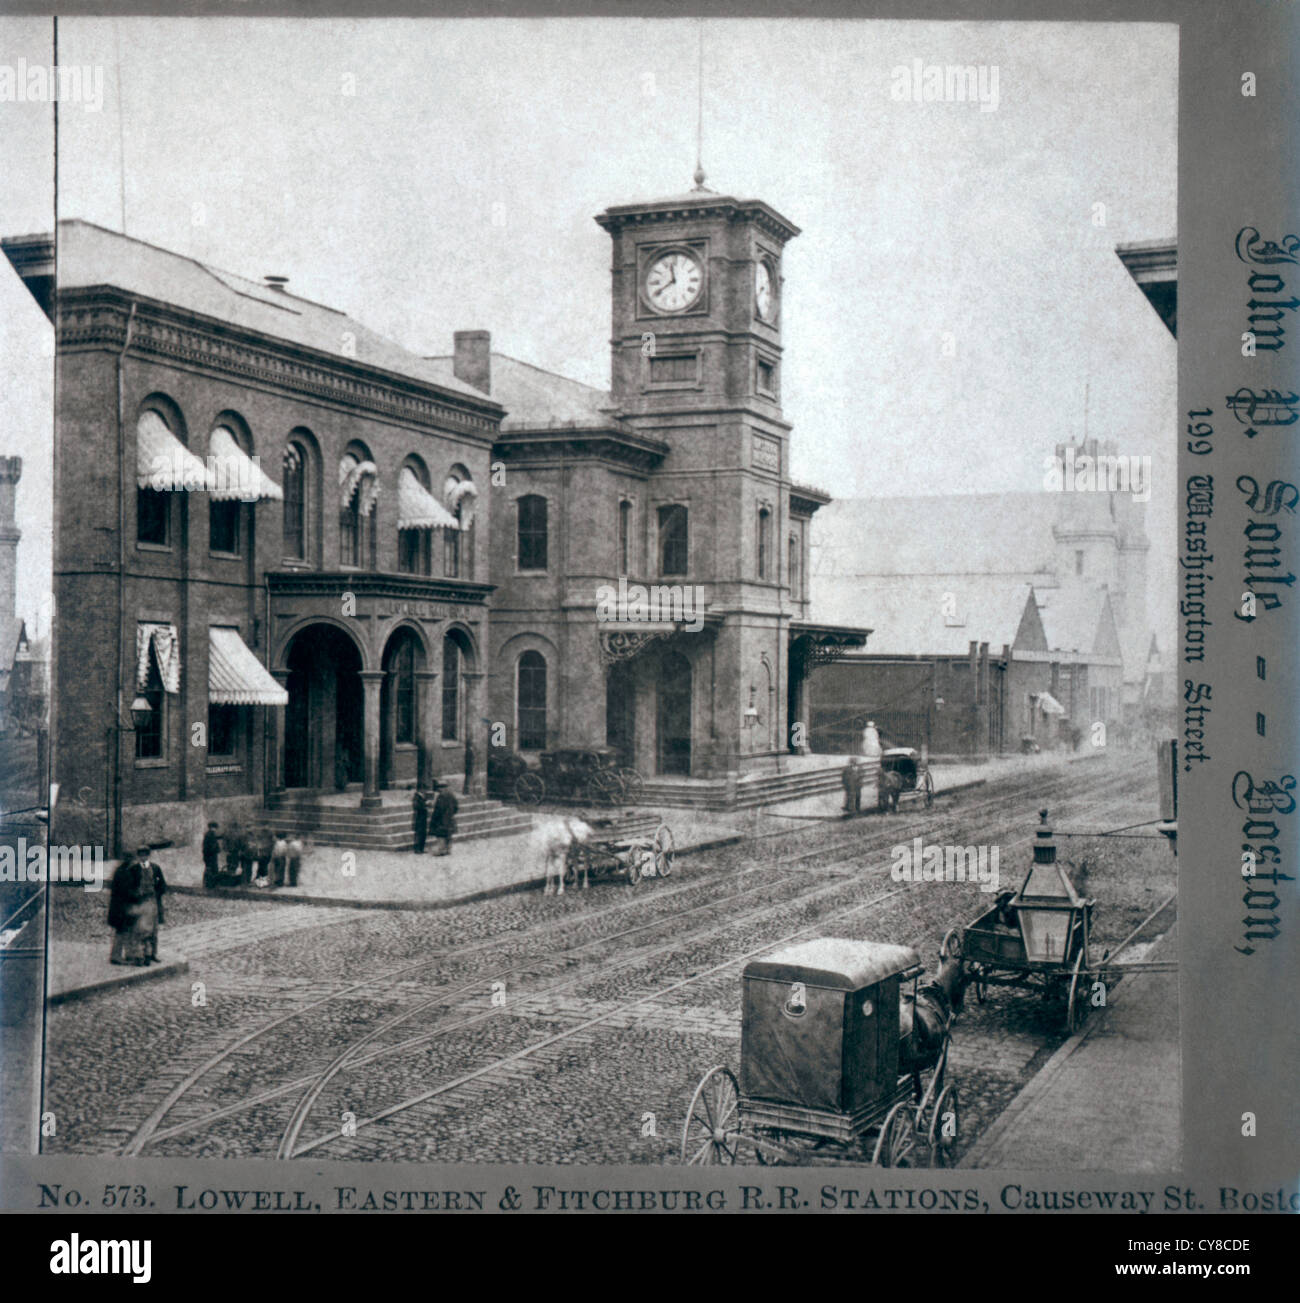 Lowell, östlichen & Fitchburg Railroad Station, Boston, Massachusetts, USA, um 1900 Stockfoto